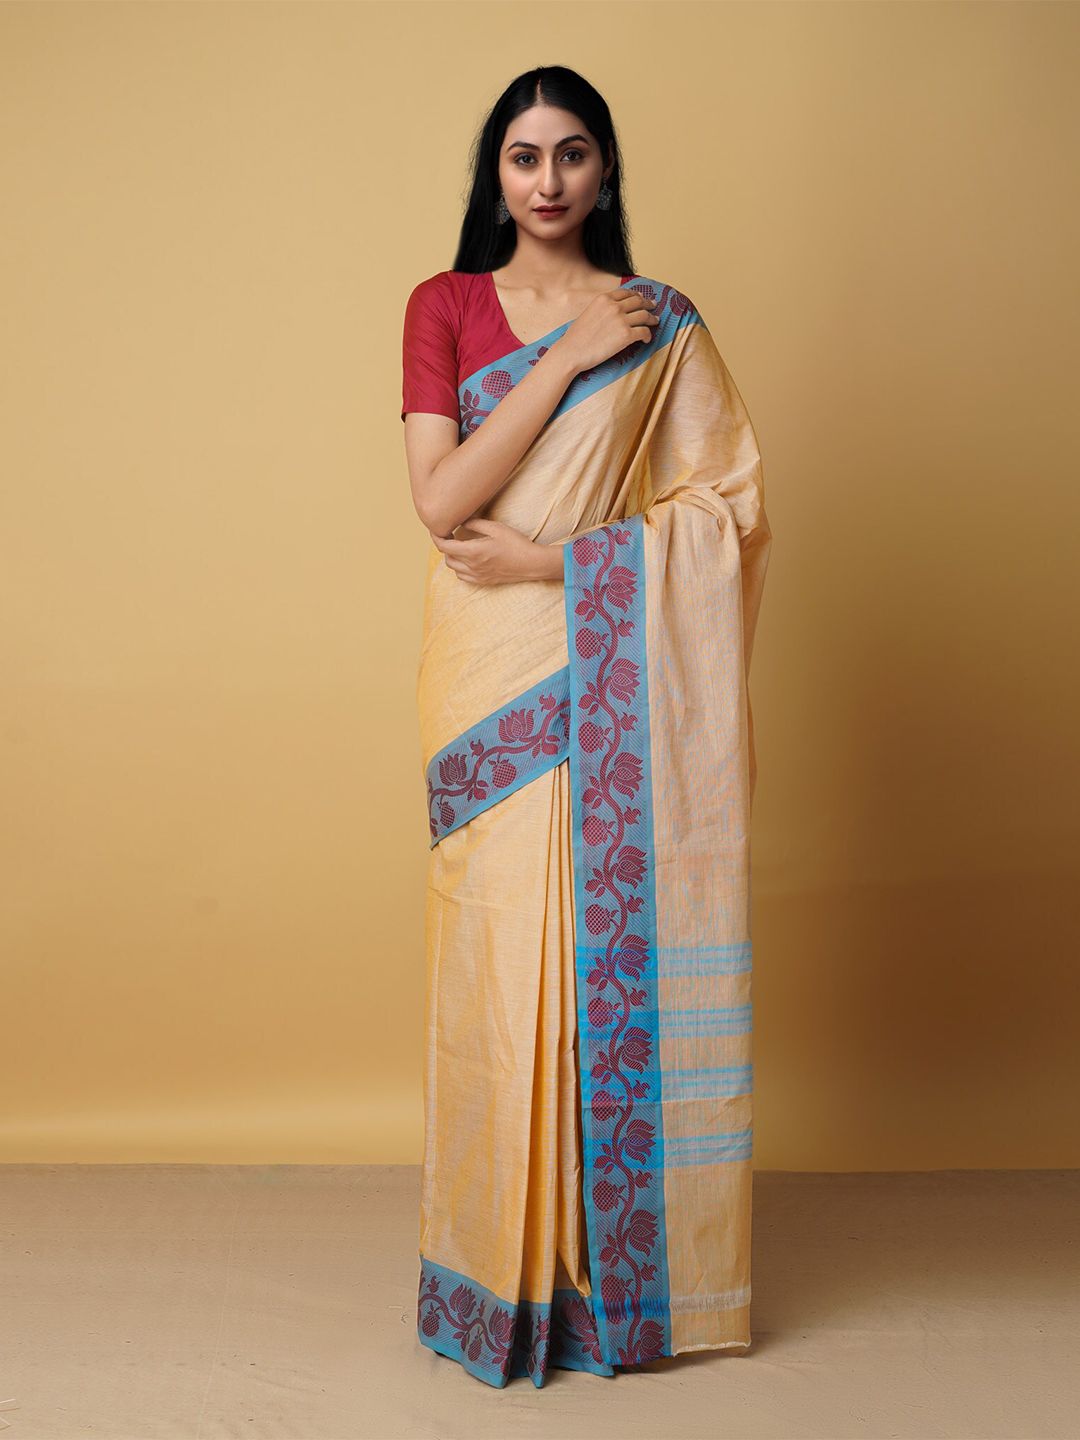 Unnati Silks Cream-Coloured & Blue Pure Cotton Venkatgiri Saree Price in India